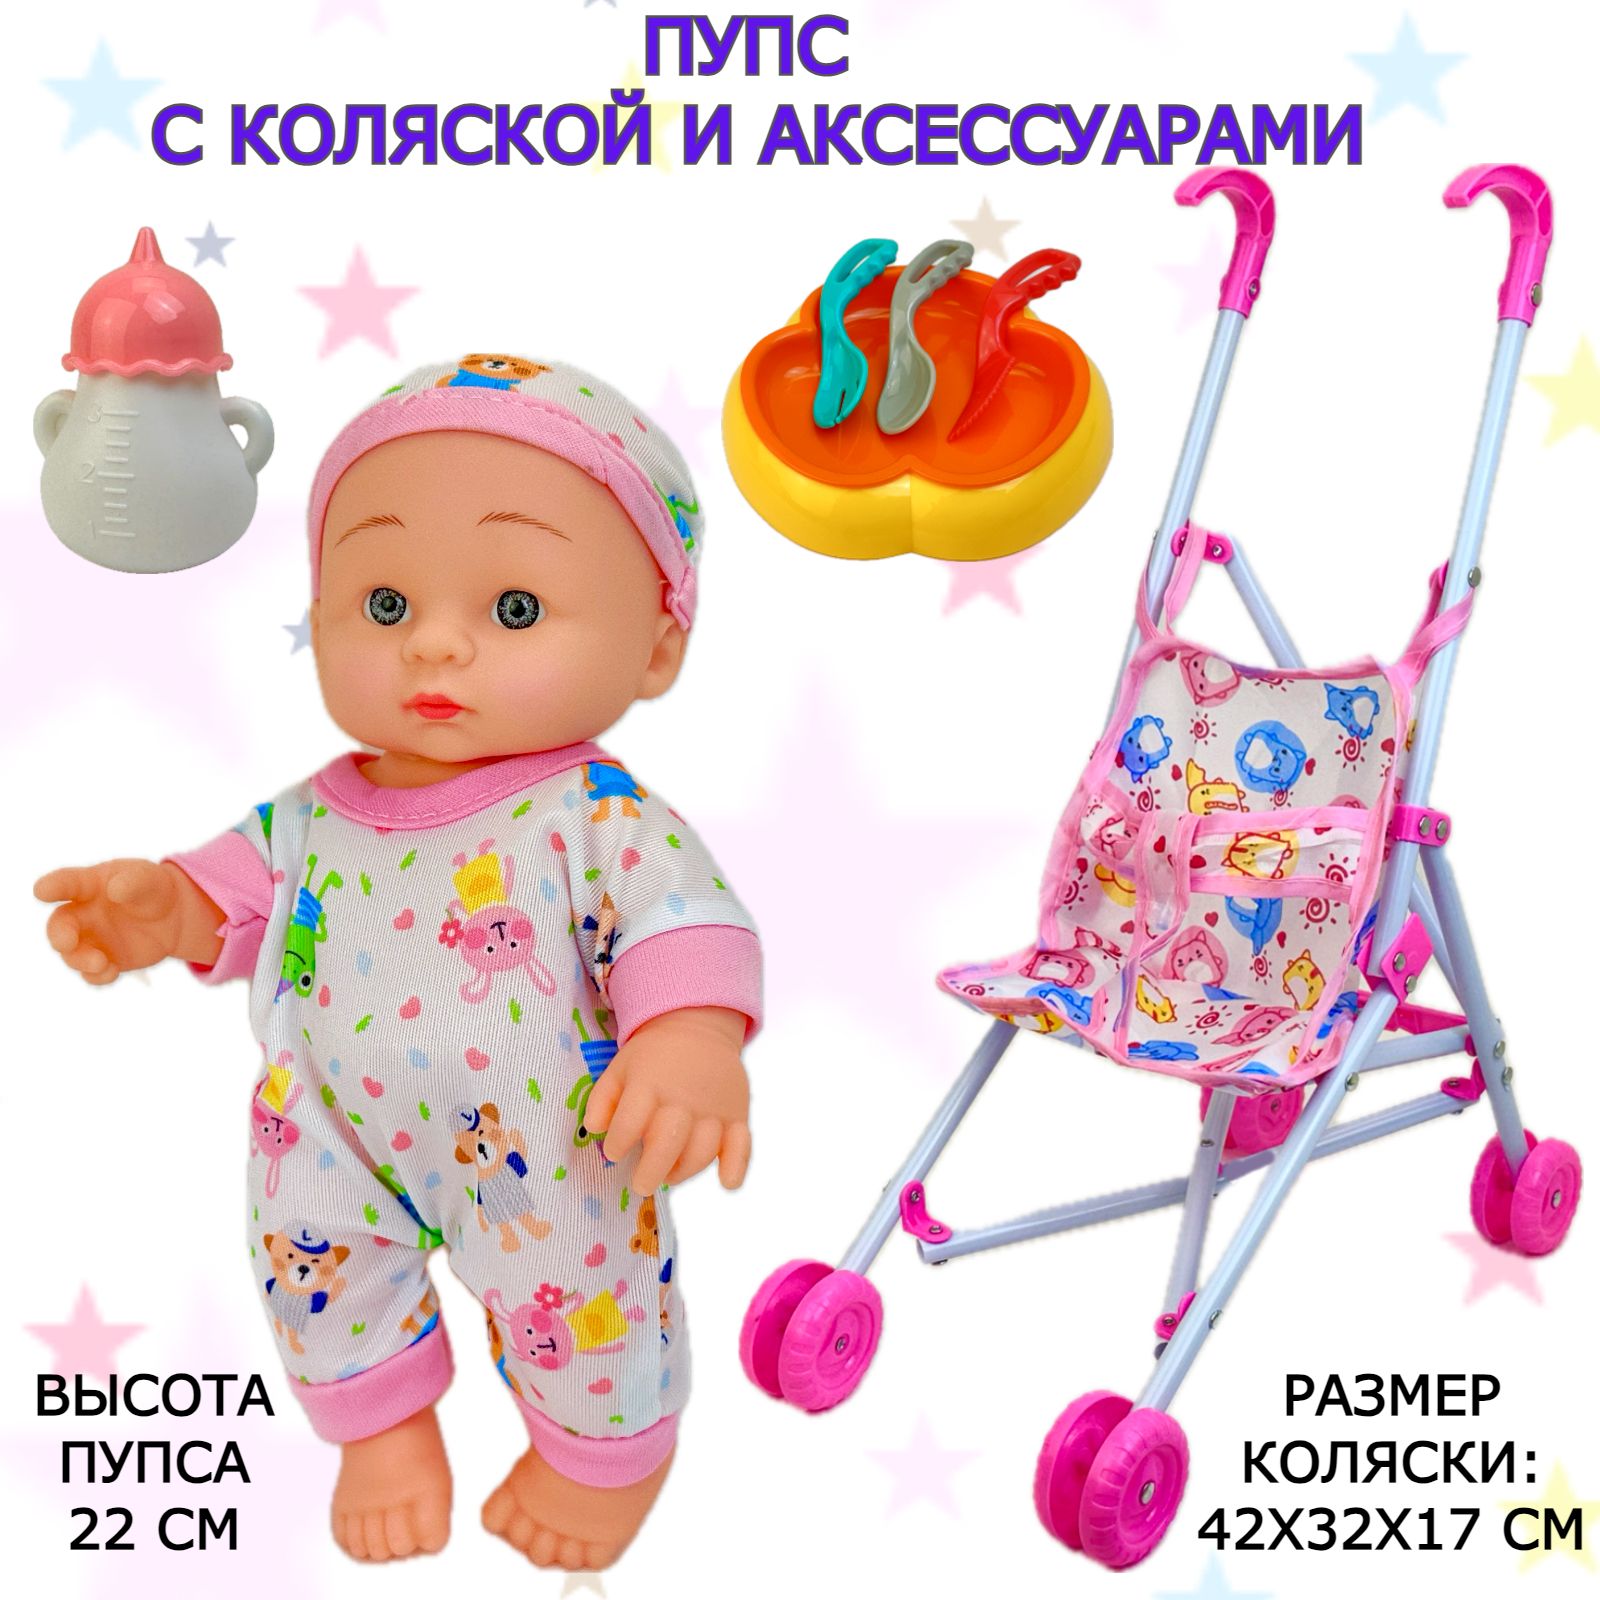 Пупс с коляской и аксессуарами для кормления Cute Baby, 22 см, 7 предметов